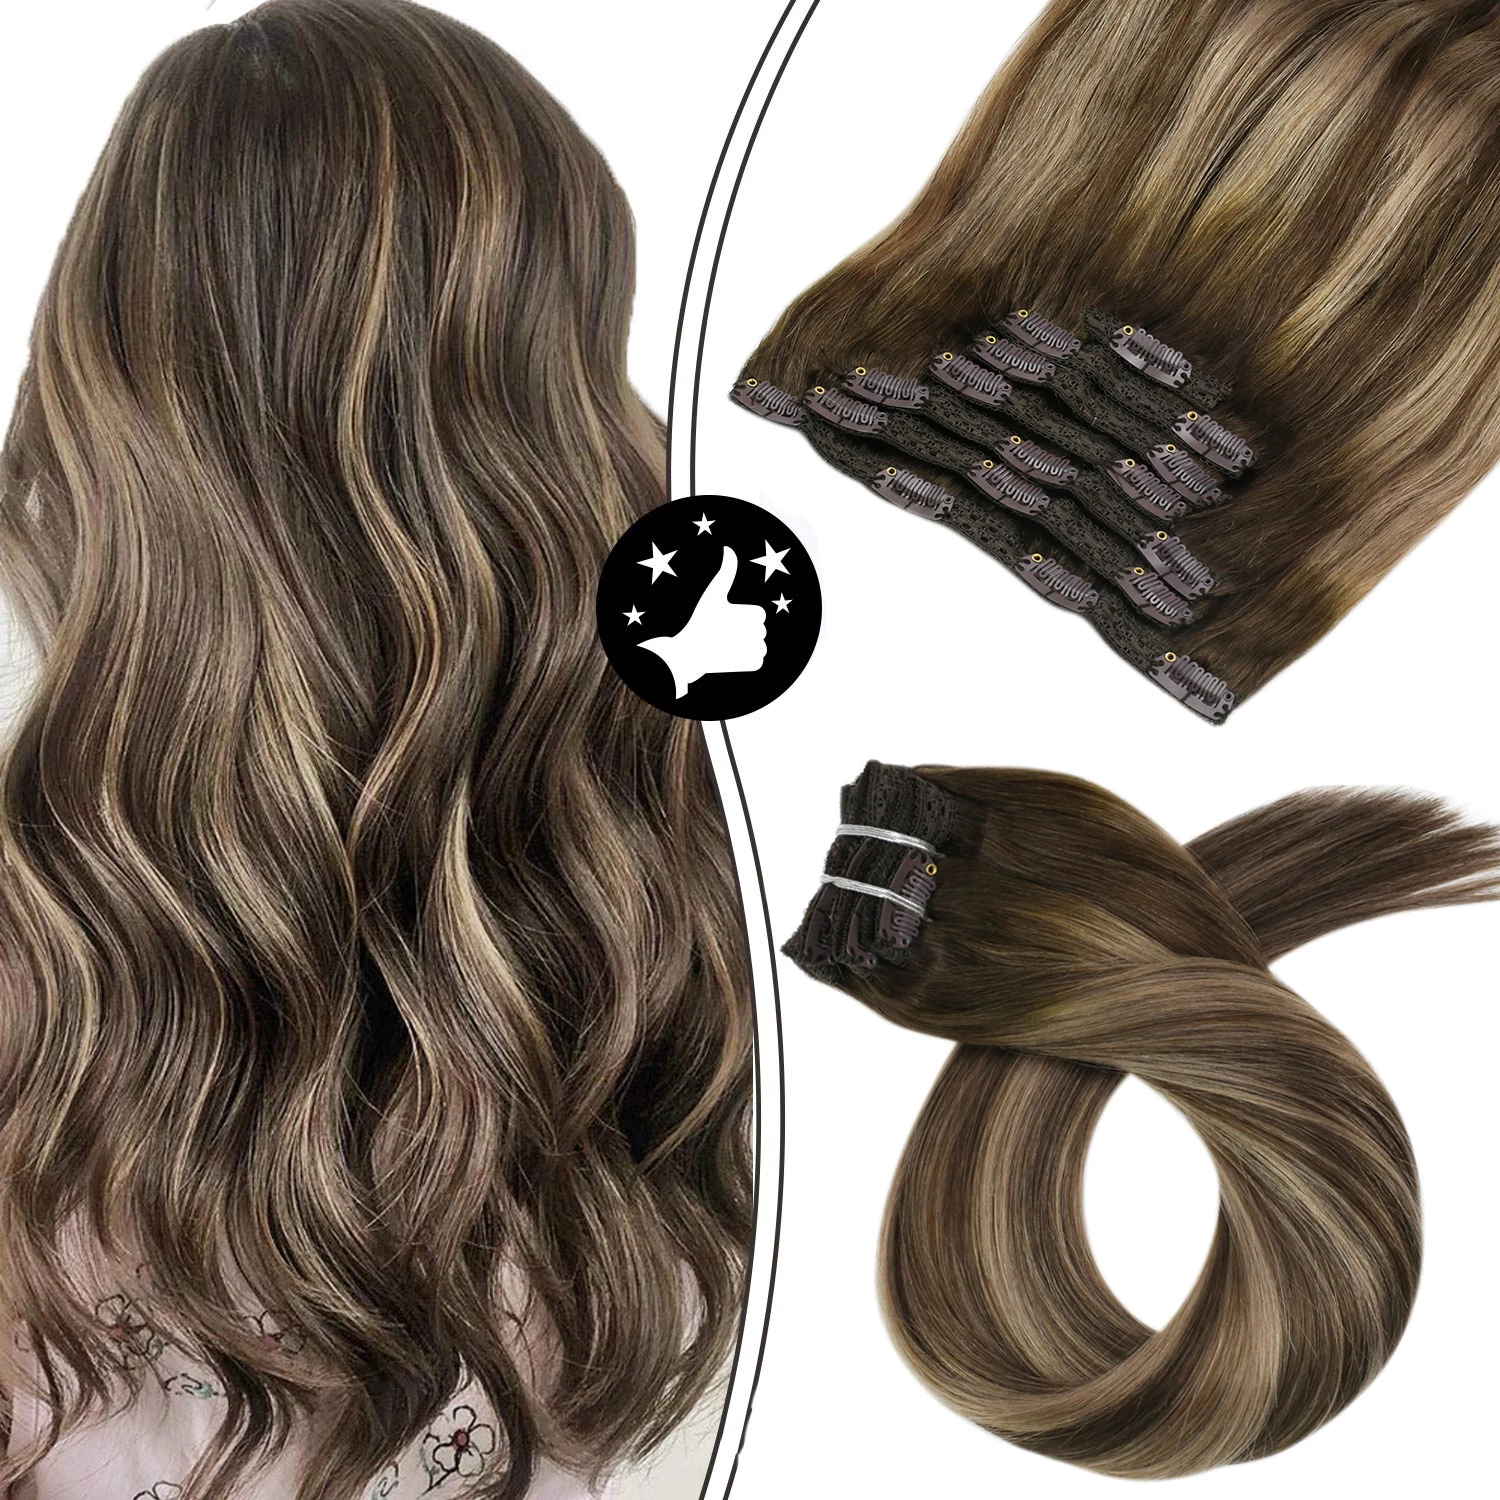 Menschliches-Haar-Extensions-Clip-in-Nat-rlichen-Doppel-Tressen-Mahcine-Remy-Haar-Balayage-Braun-Farbe-Volle.jpg_Q90.jpg_